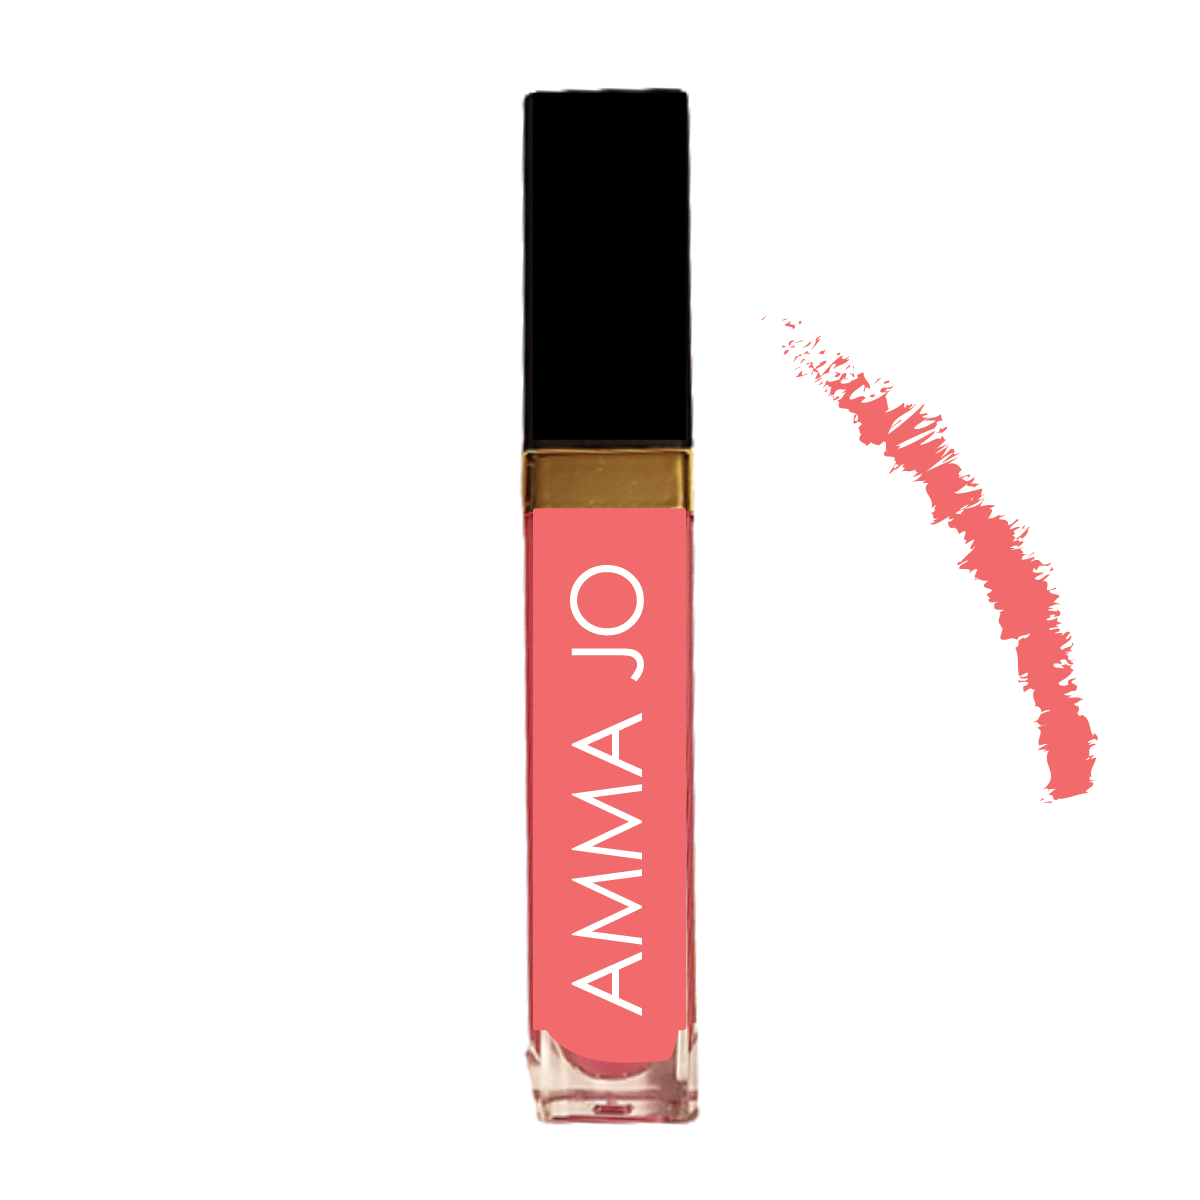 AMMA JO Strawberry Latte Lip Paint Lip Gloss